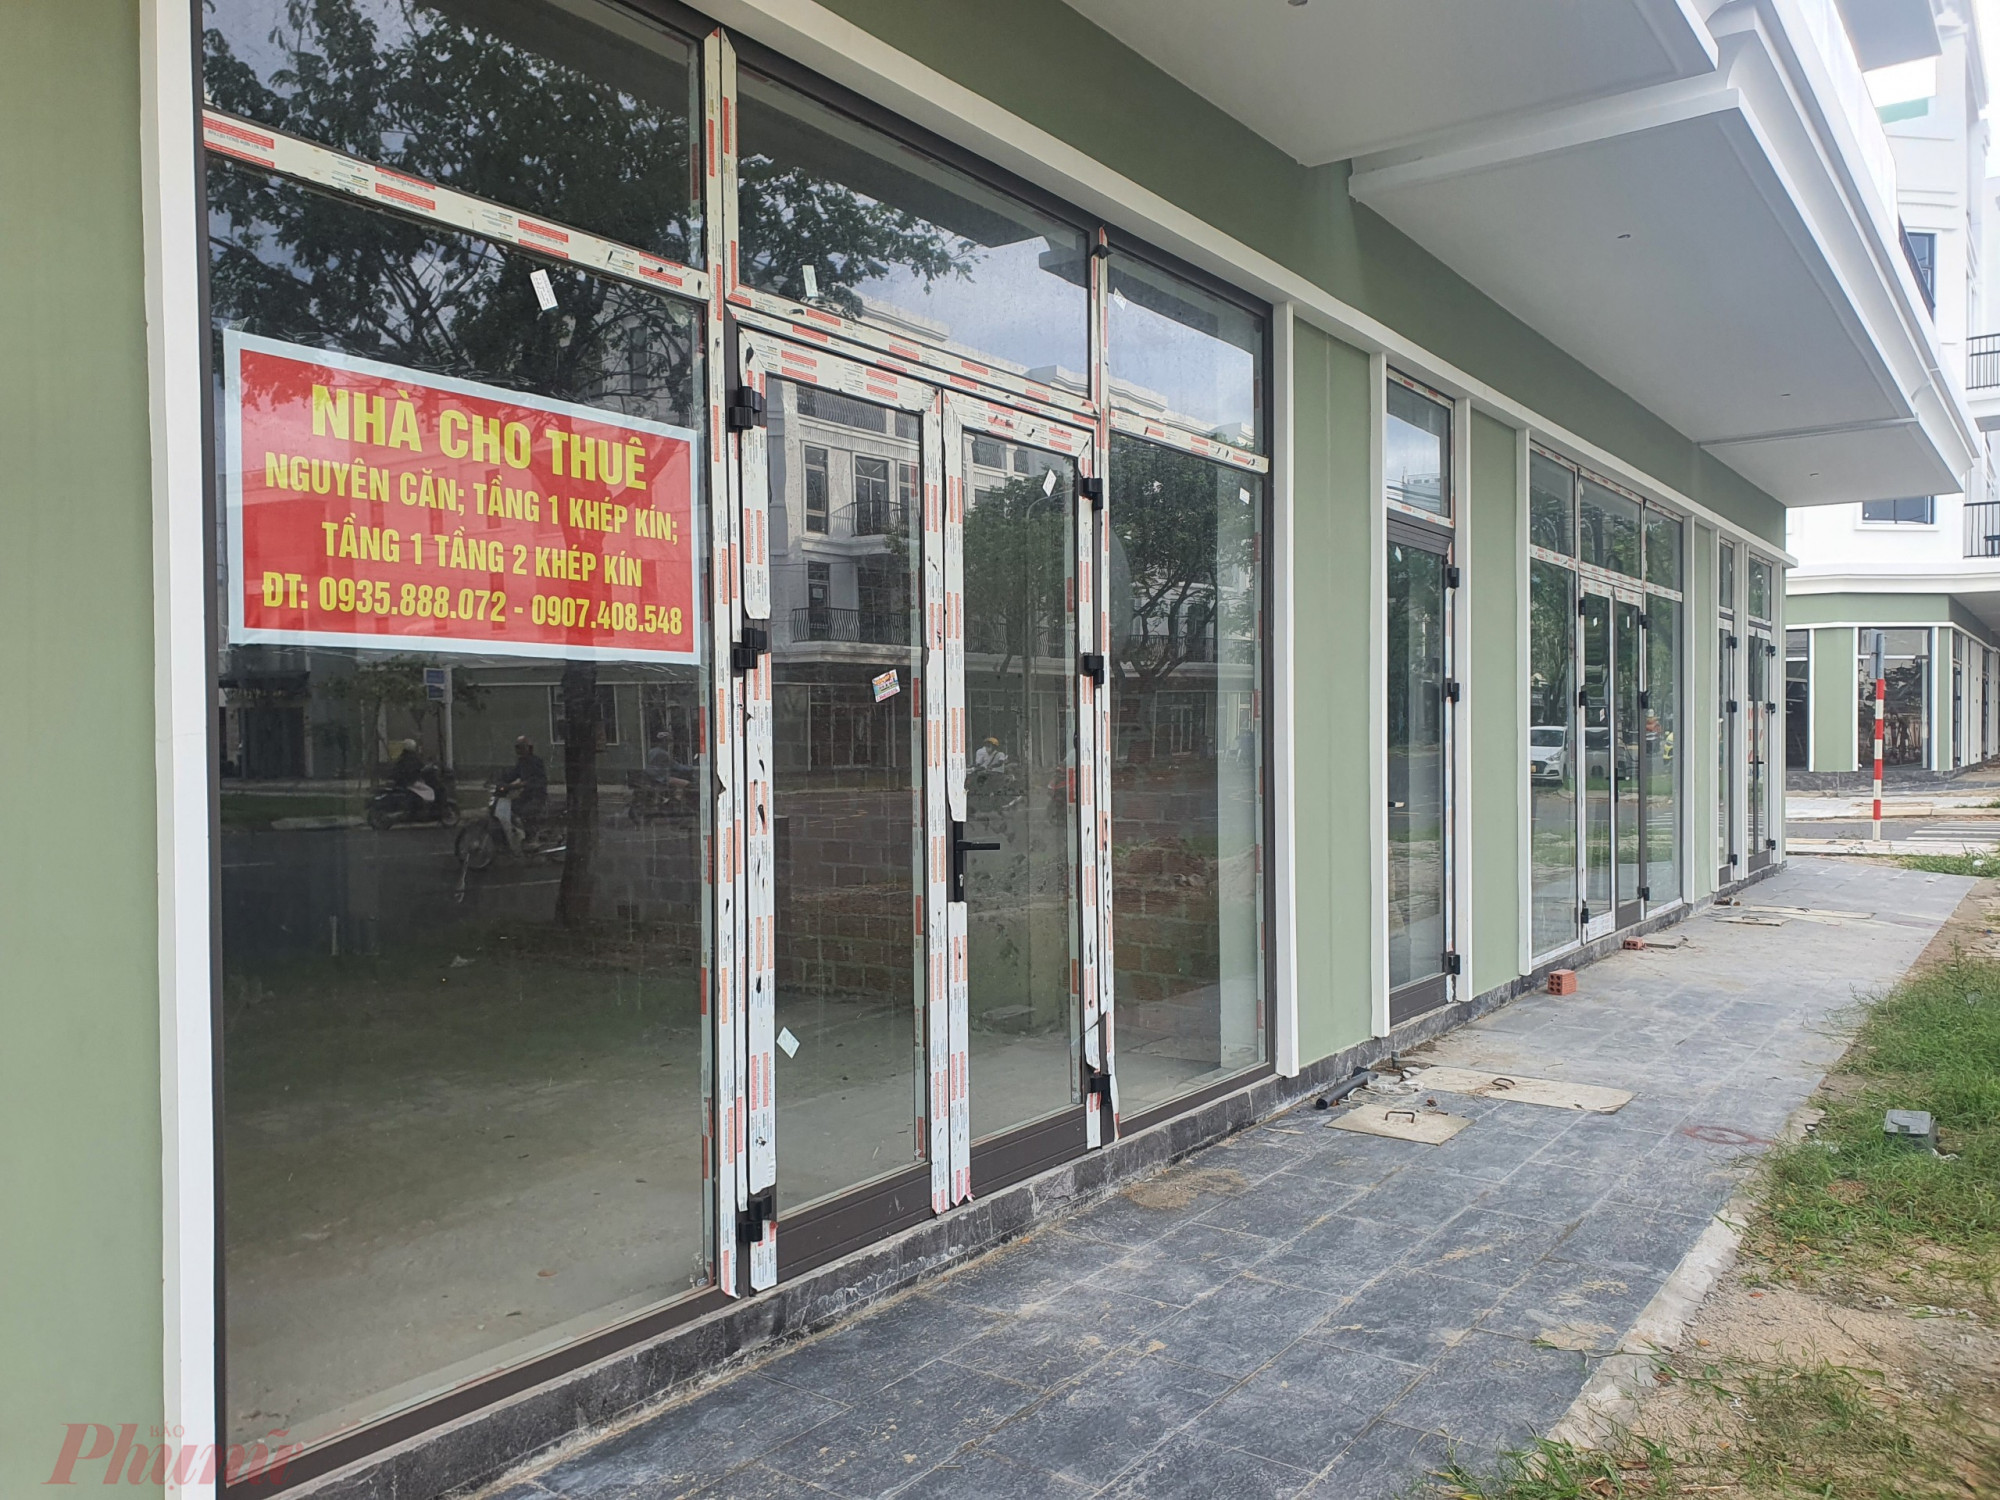 Khả thừa nhận đã trộm cắp số khung cửa nhôm kính ở dãy shophouse trên đường Nguyễn Sinh Sắc, mang các bộ cửa đi bán lấy tiền mua ma túy.